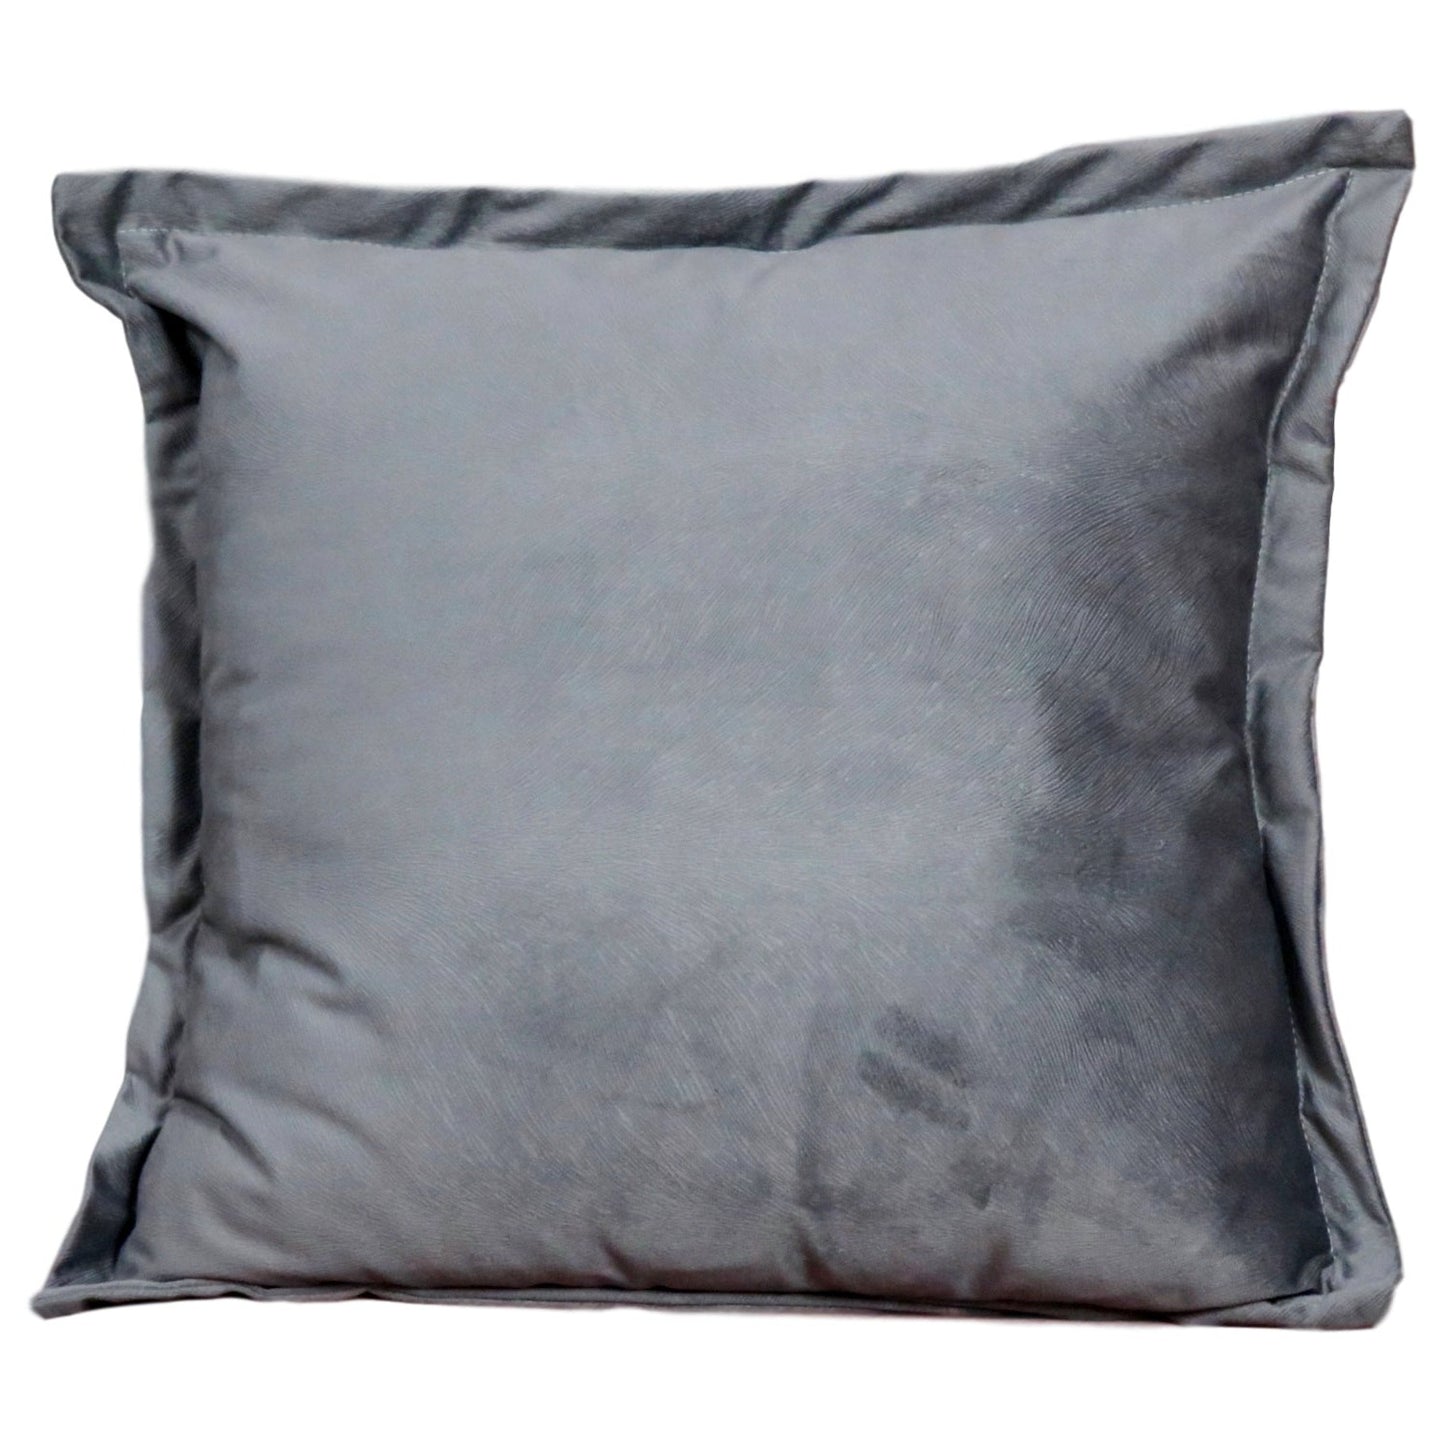 Snakeskin textured grey velvet cushion cover by Native